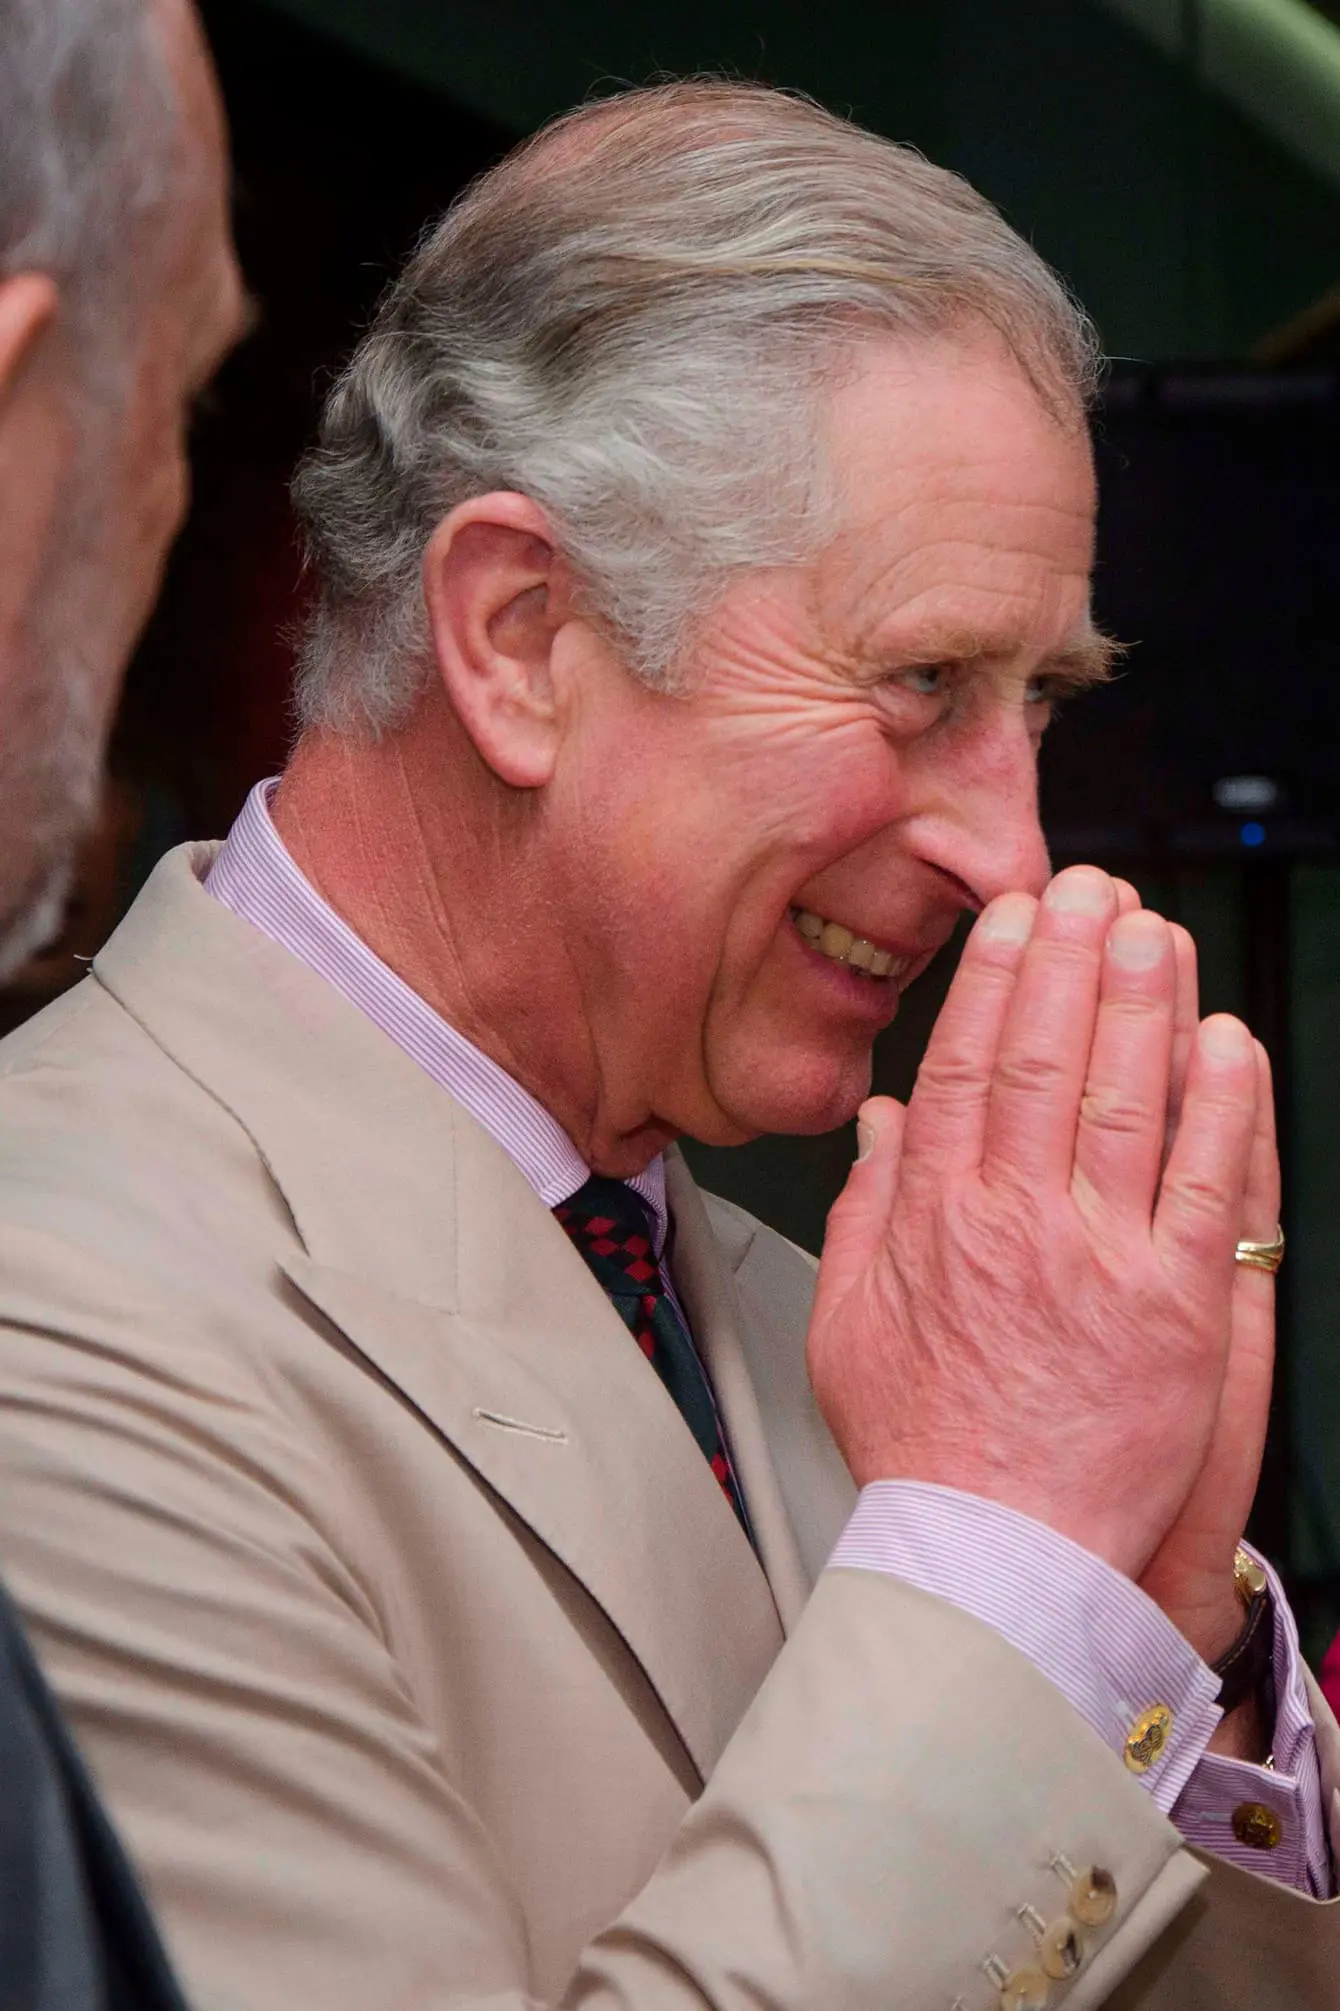 Prince Charles rings